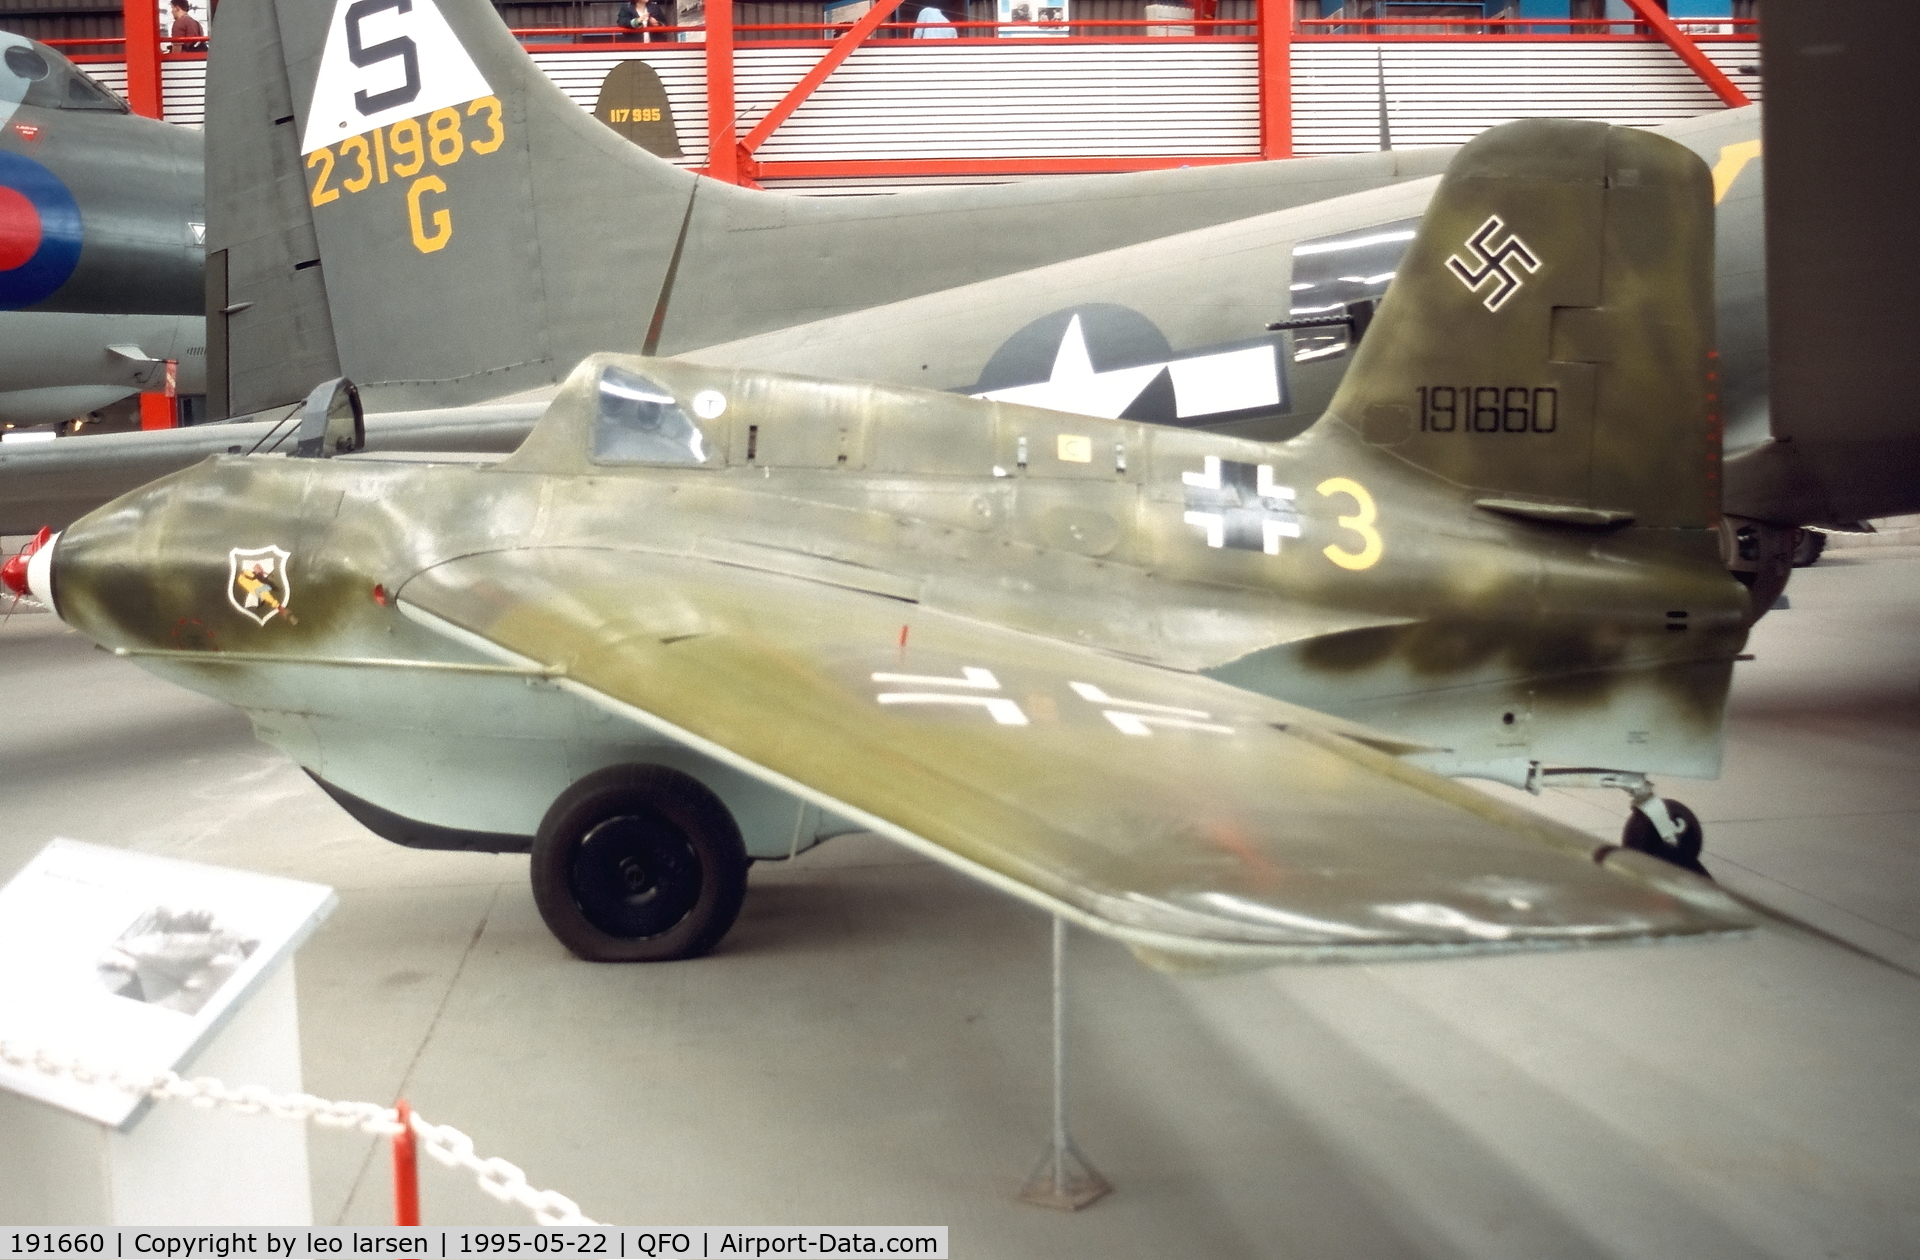 191660, Messerschmitt Me-163.B-1a Komet C/N 191660, Duxfor 22.5.1995